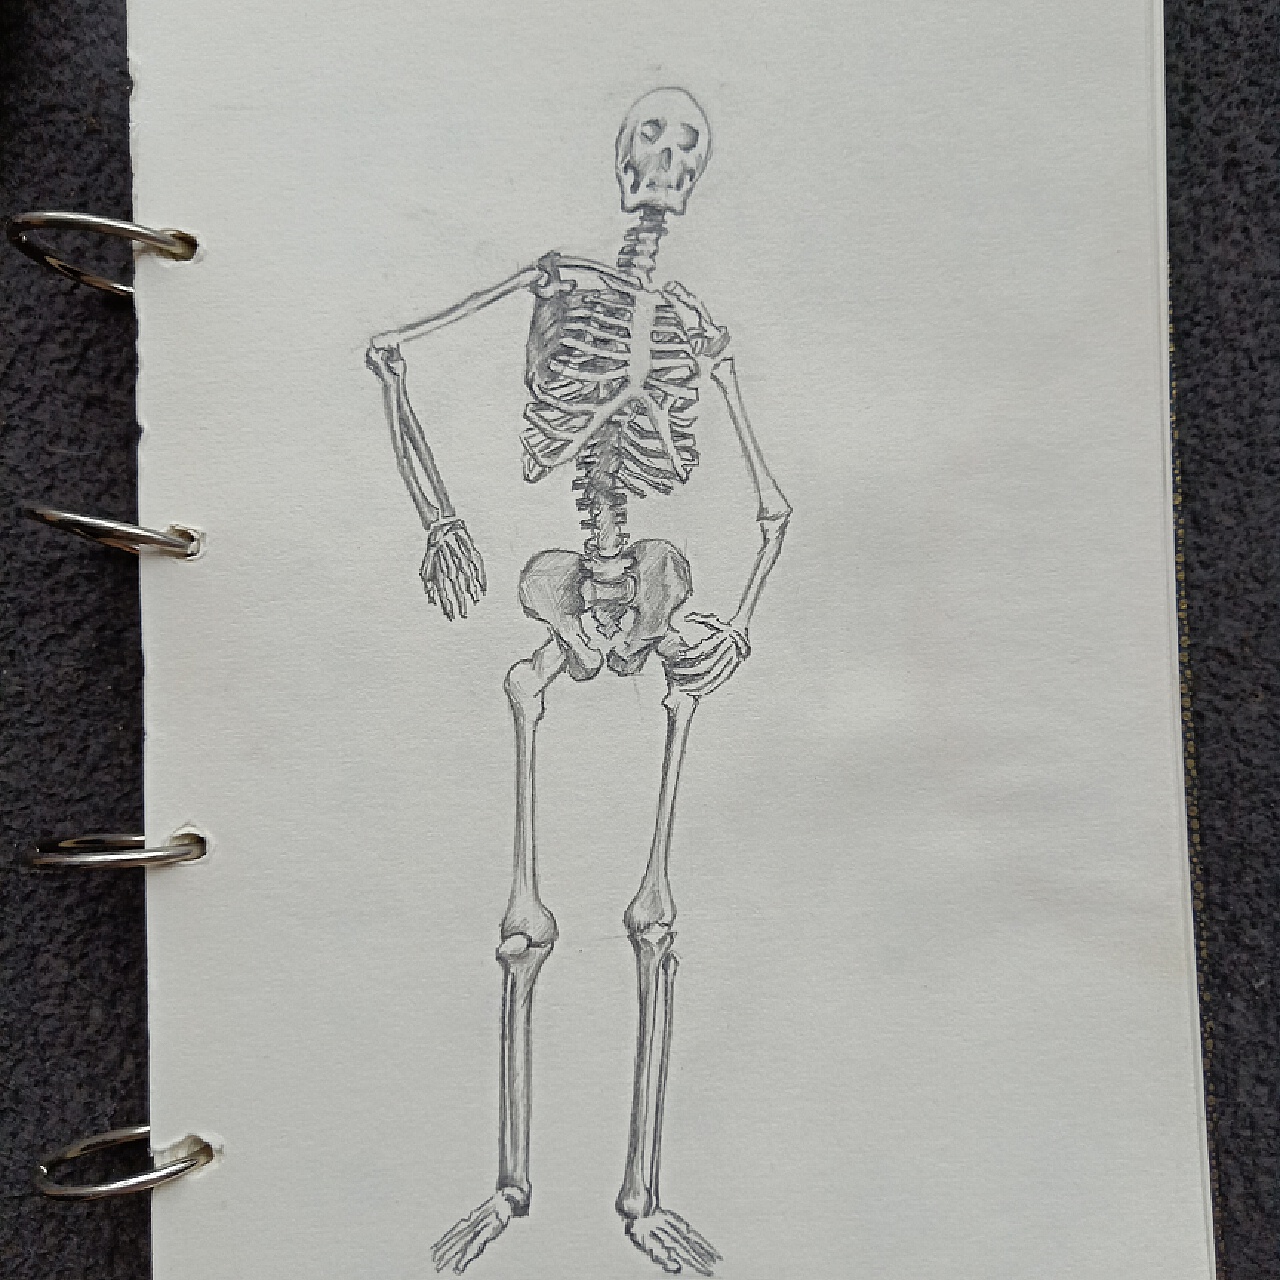 Skeleton and bones vector set 122295 Vector Art at Vecteezy